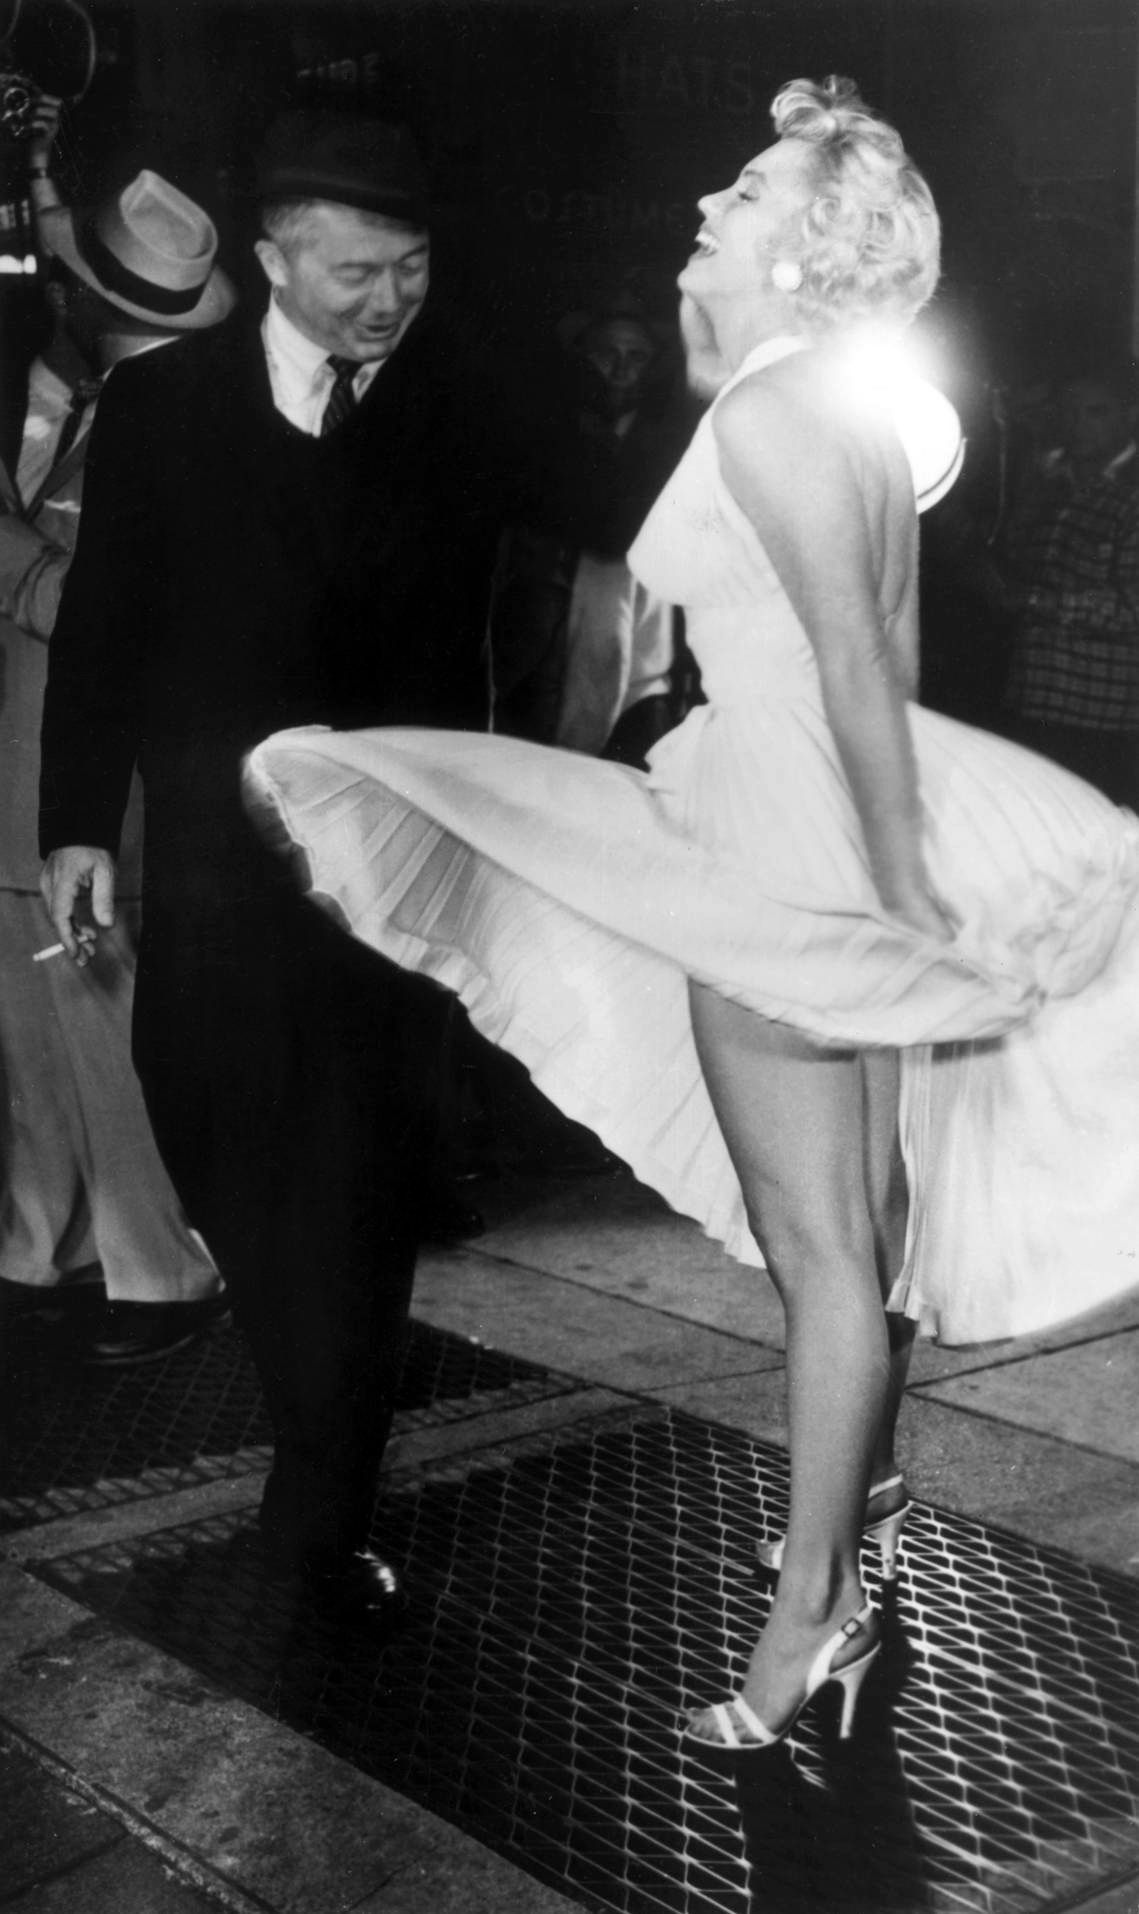 Marilyn Monroe con su vestido blanco